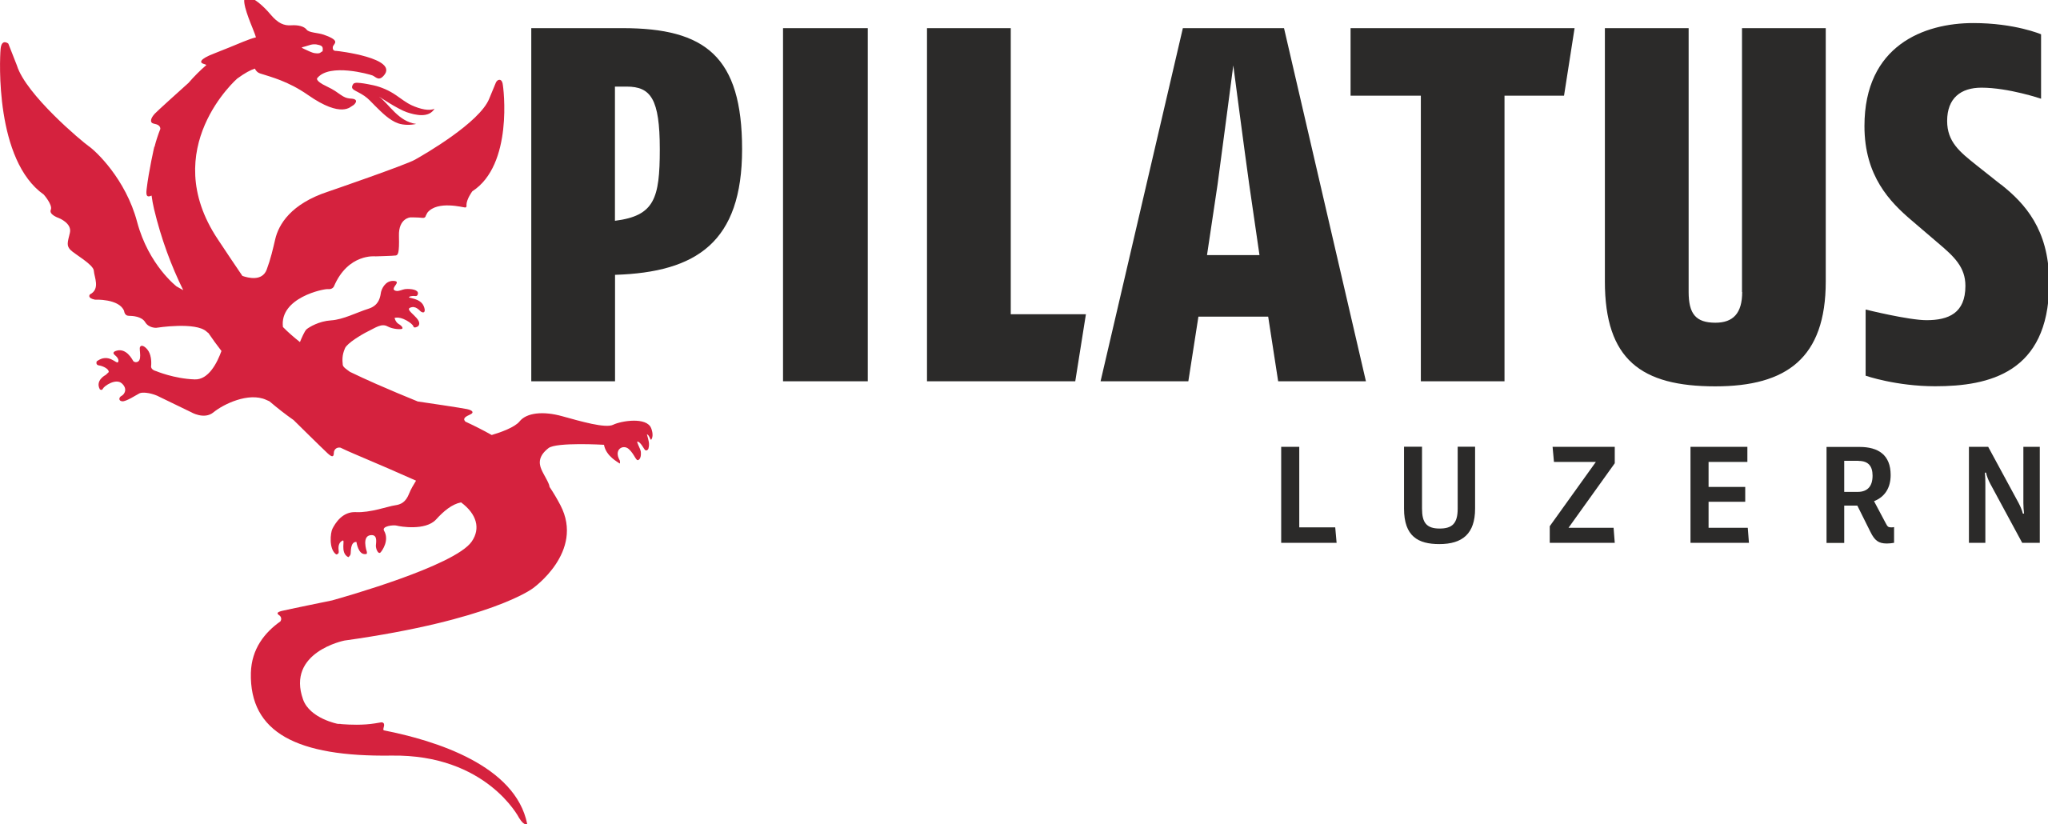 Pilatus-Bahnen AG